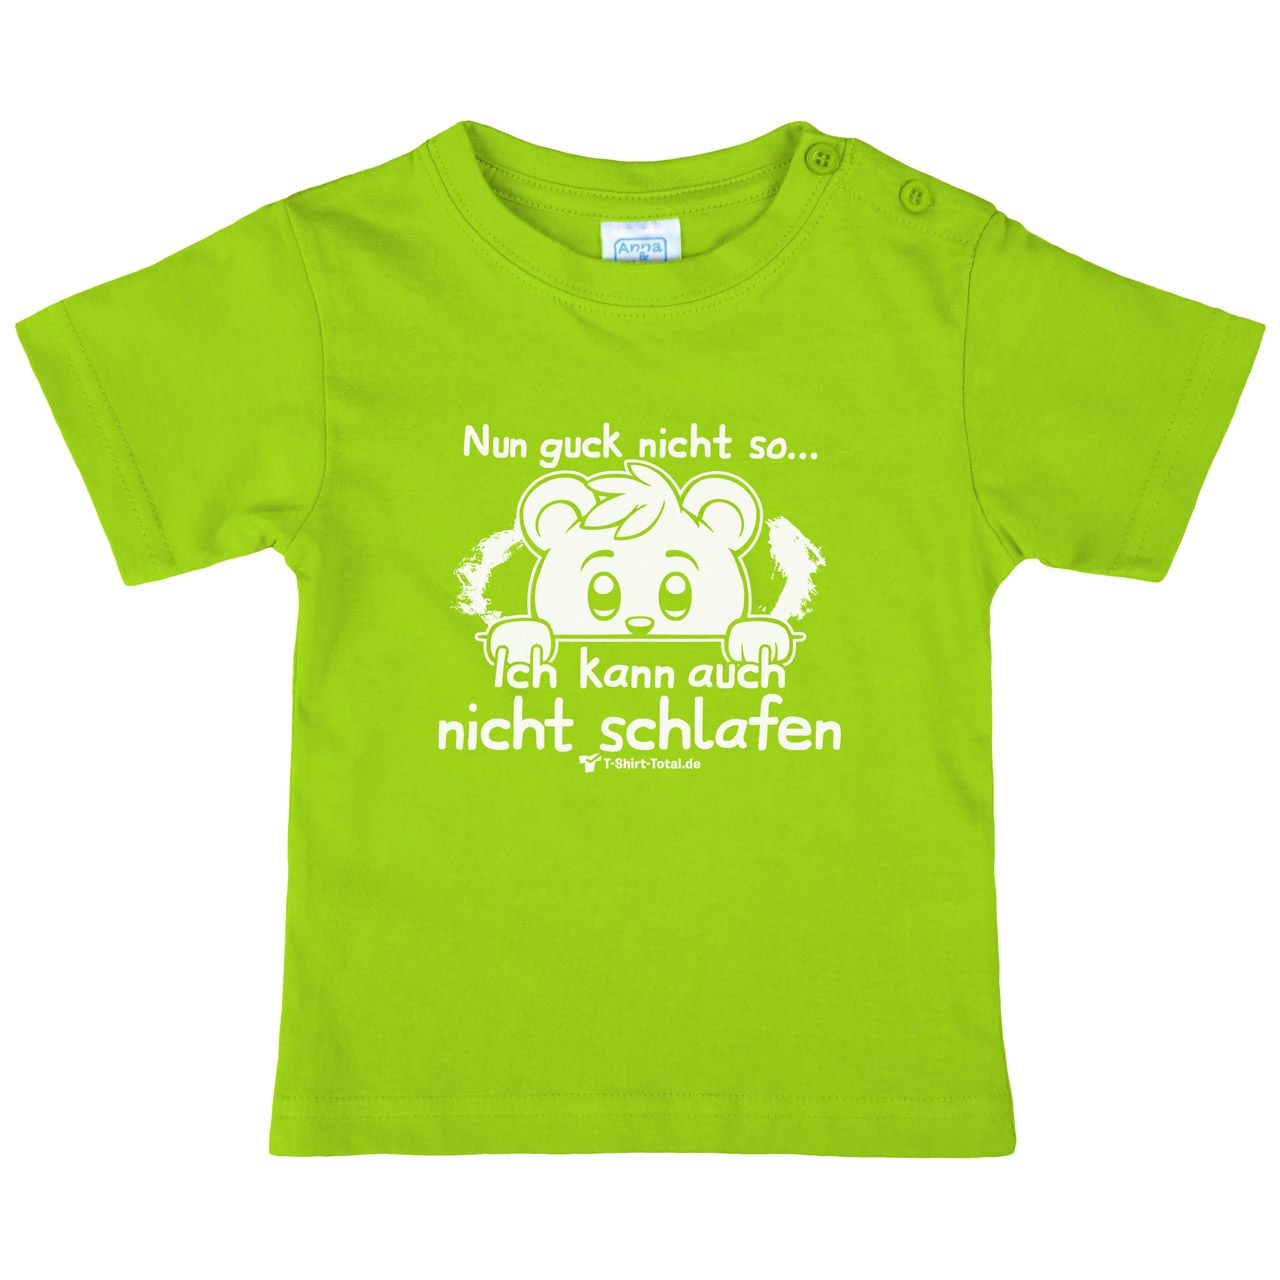 Guck nicht so Kinder T-Shirt hellgrün 68 / 74